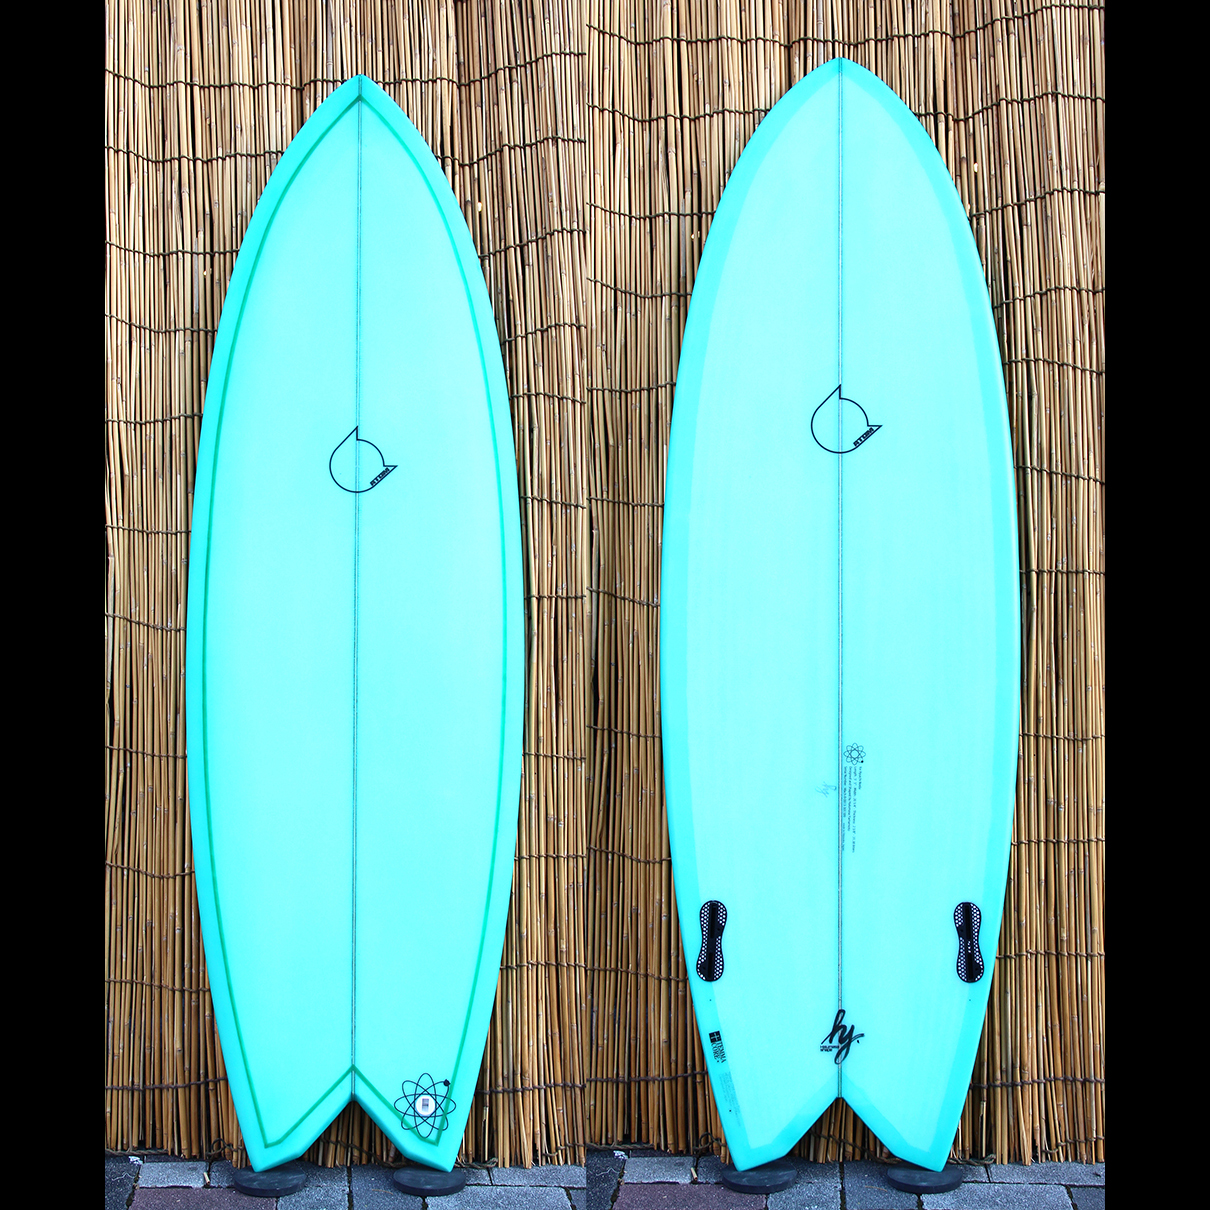 ATOM Surfboard “Mach-ll” model